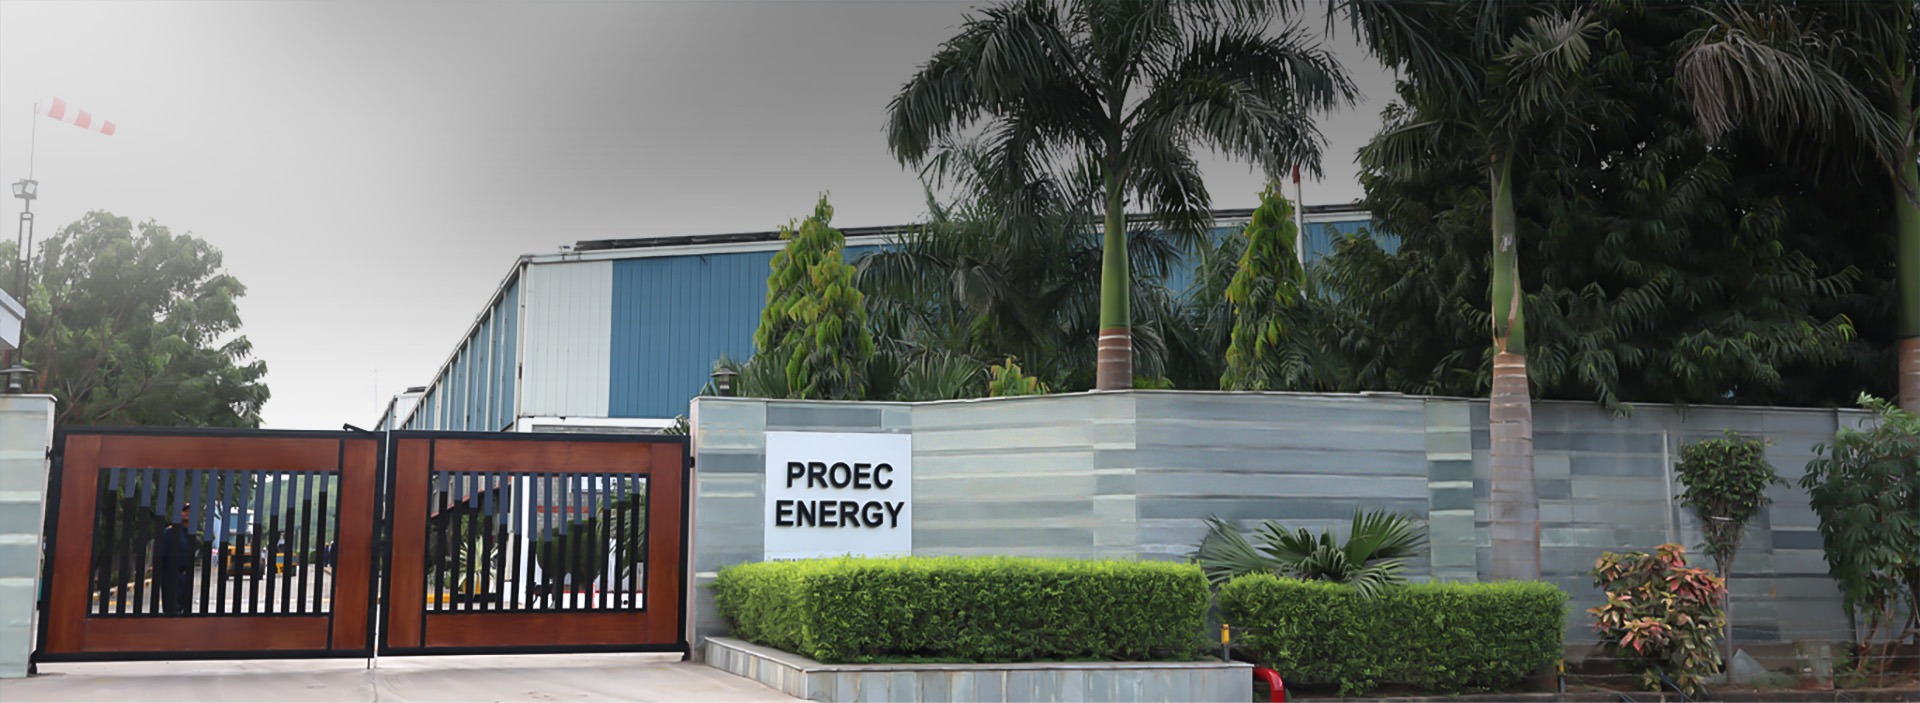 Welcome to Proec Energy Ltd.